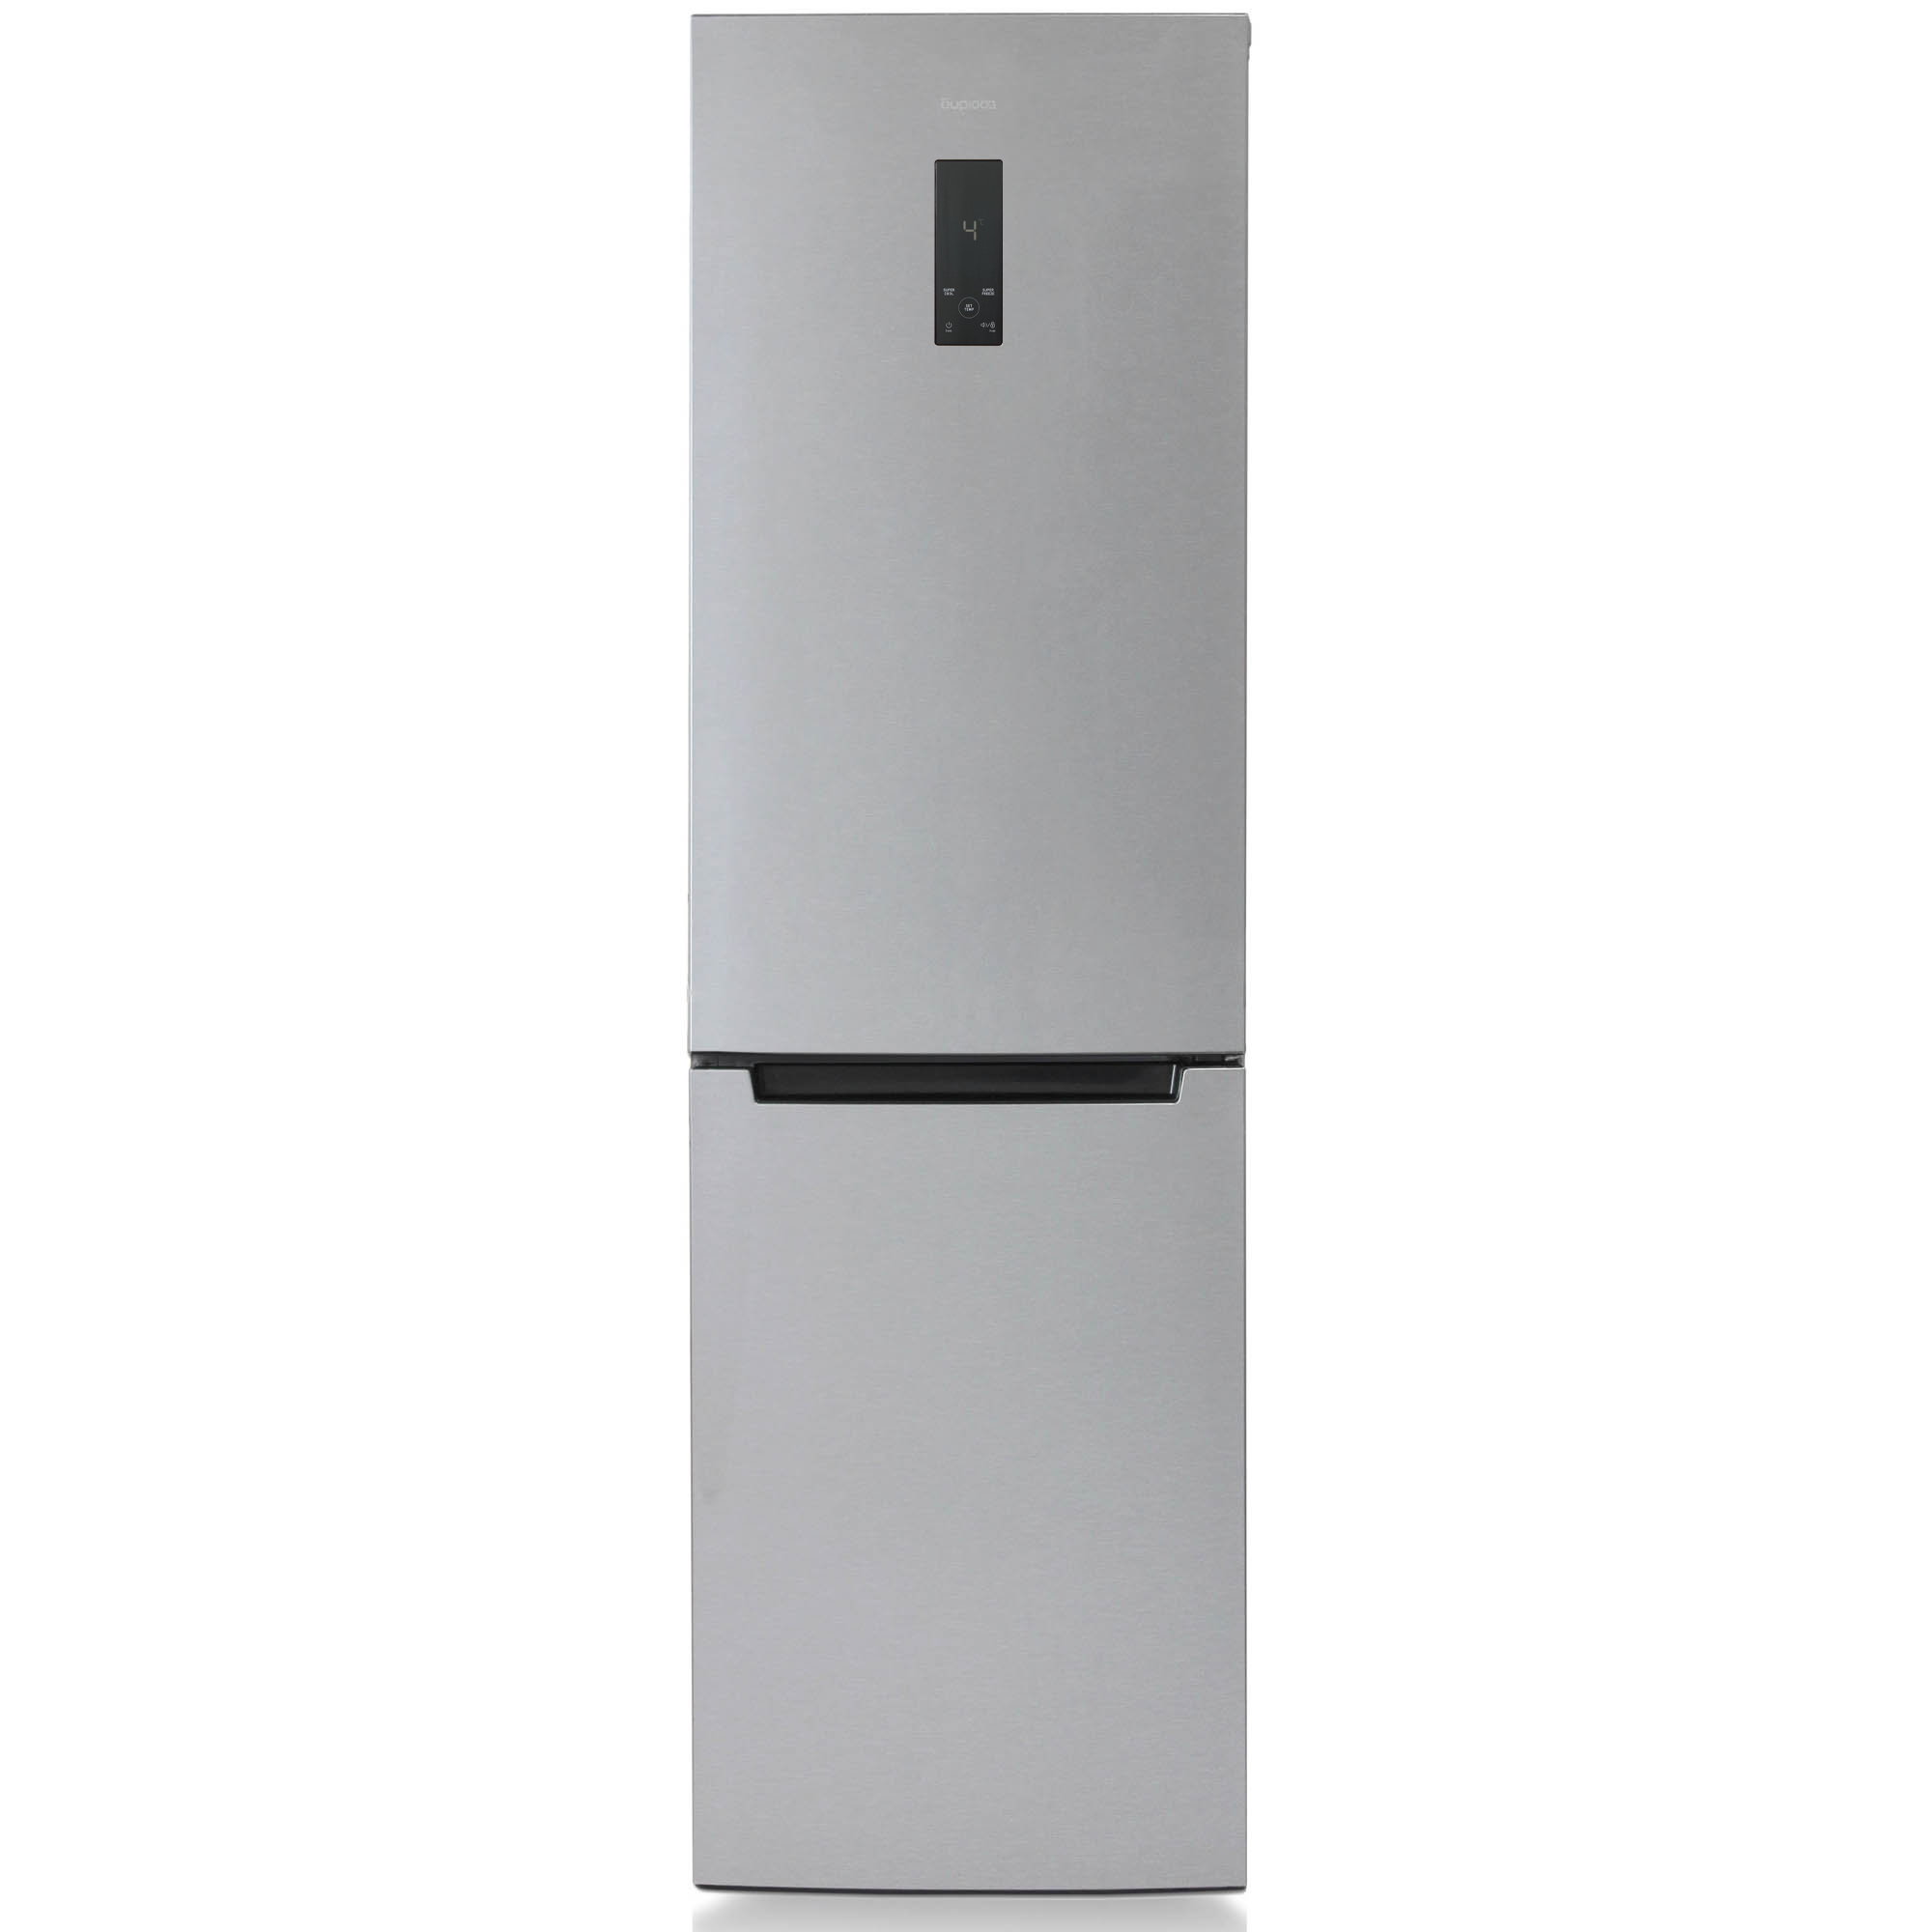 Холодильник Бирюса C980NF серебристый двухкамерный холодильник liebherr cnsfd 5223 20 001 серебристый